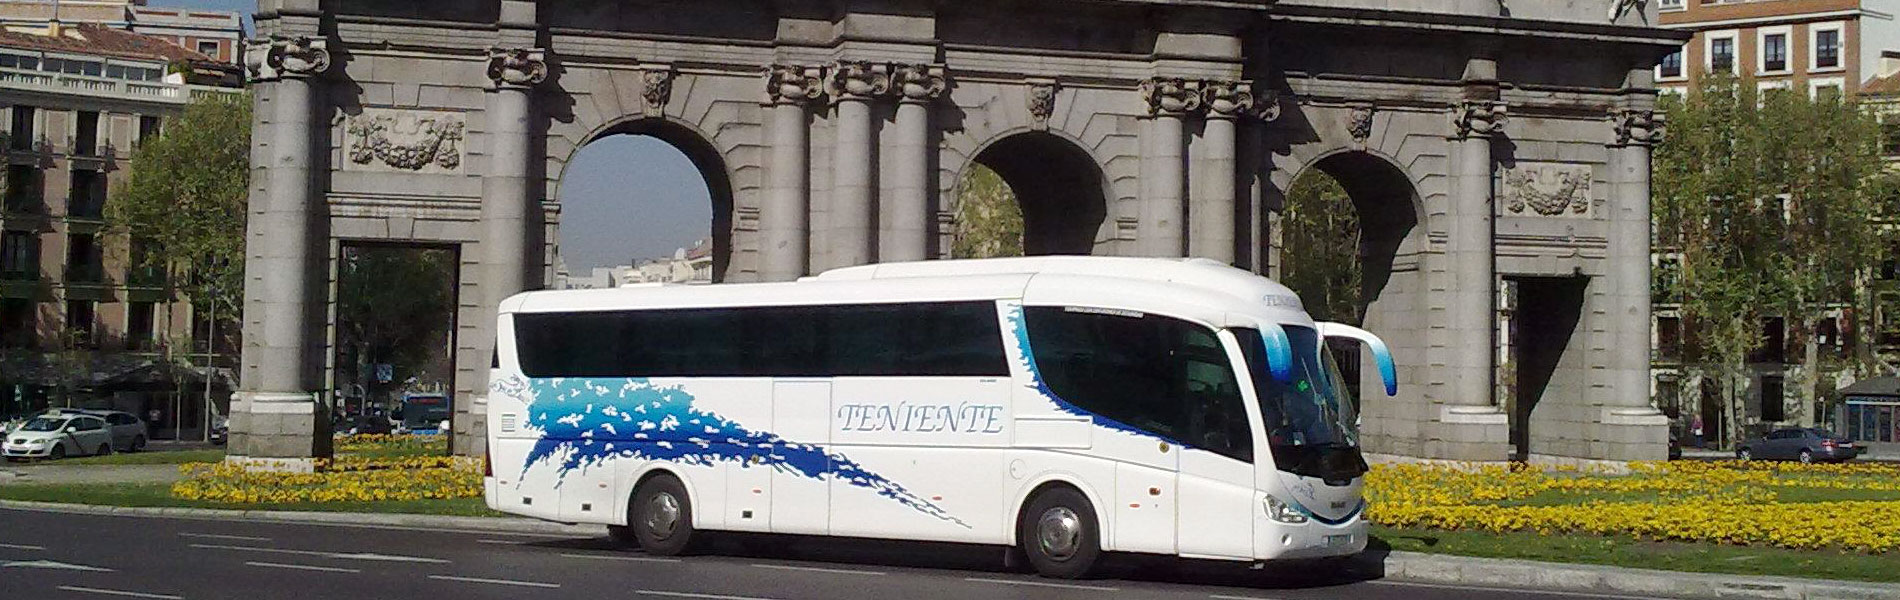 Autobus-Madrid-1900x600